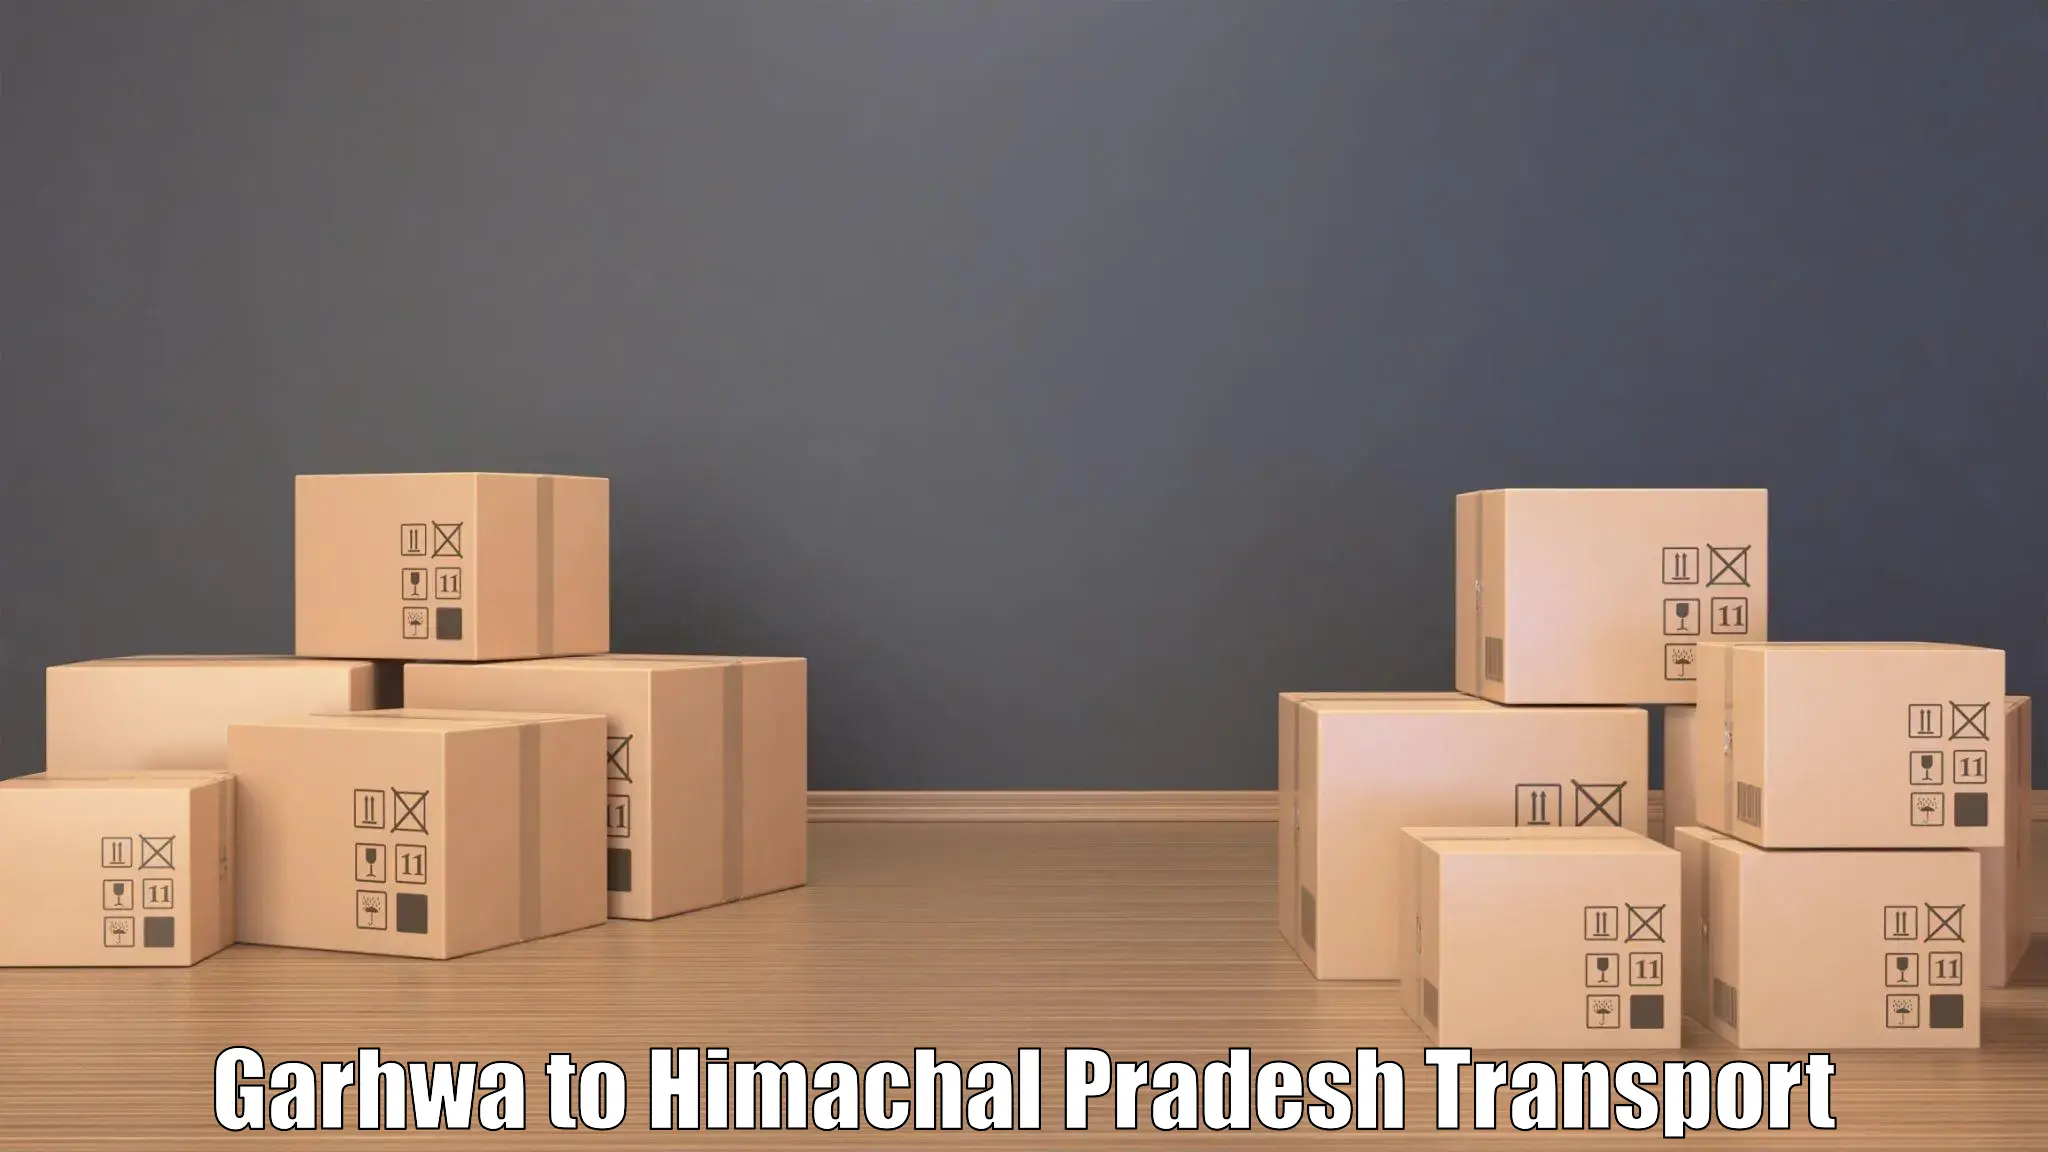 Furniture transport service Garhwa to Dharamshala